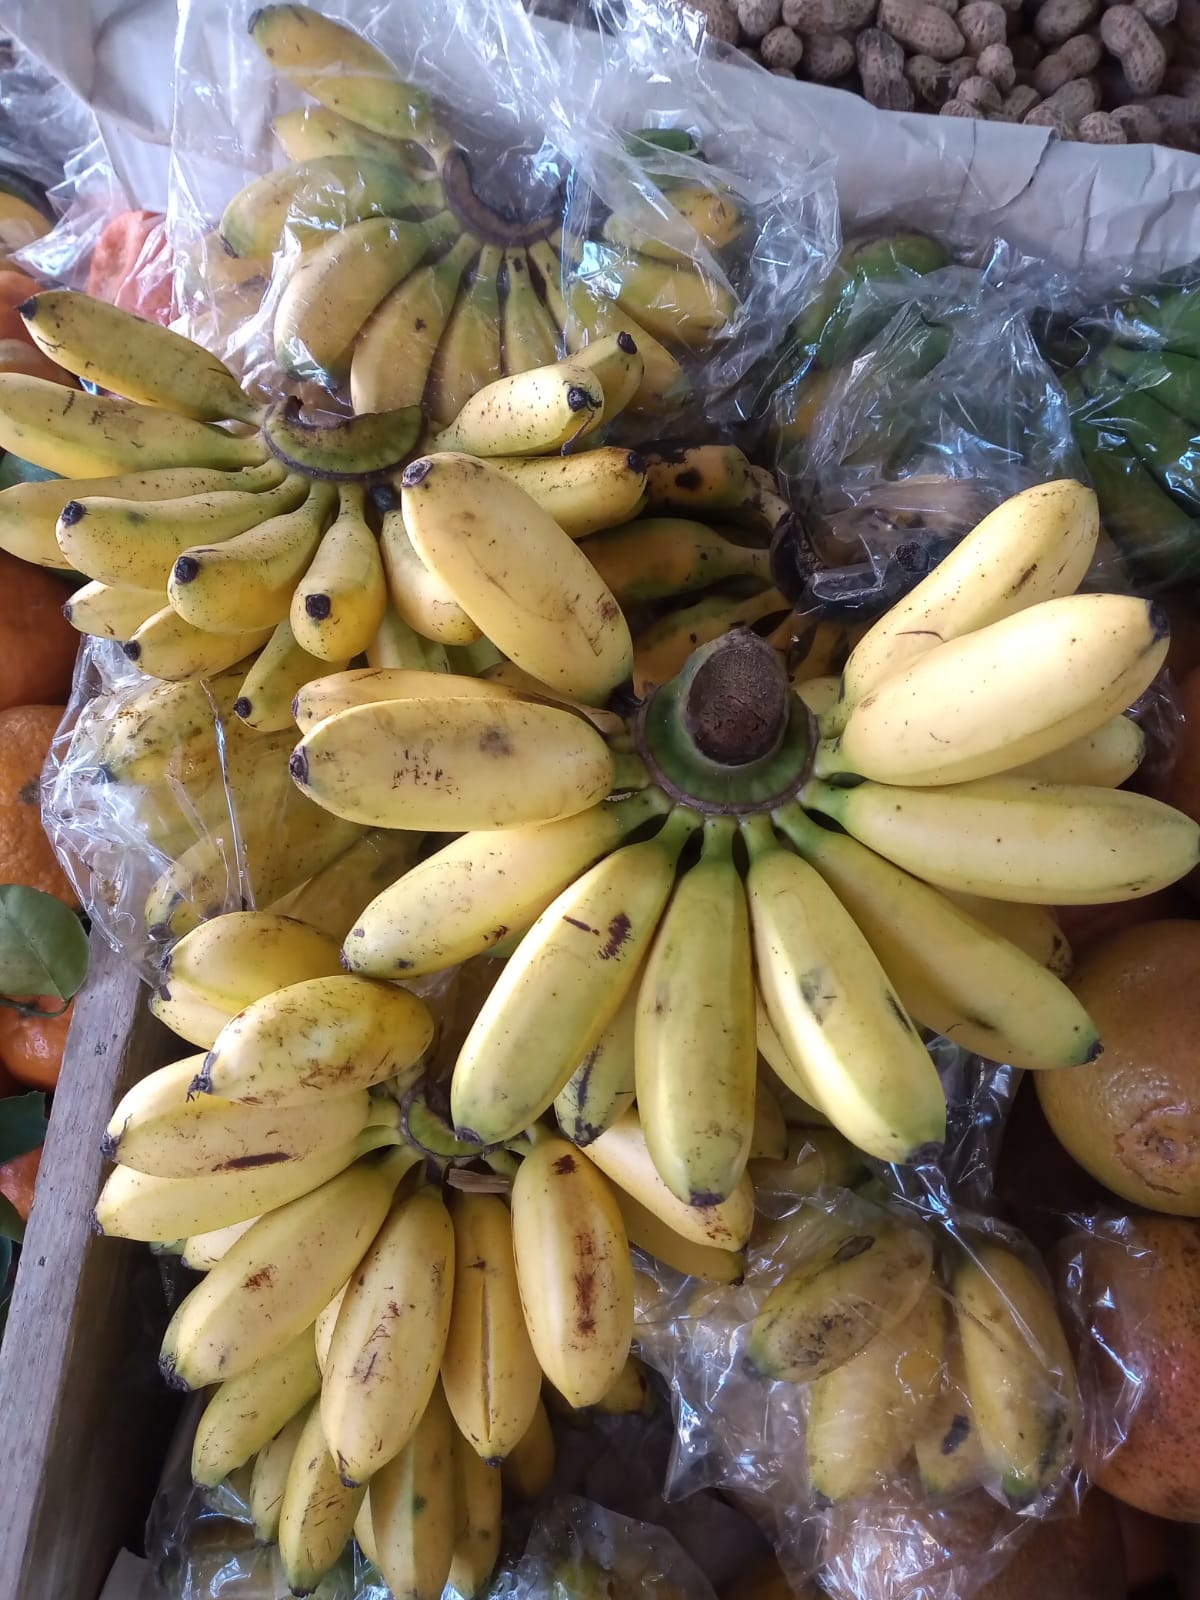 Chimia de Banana Dillin 700G - Del Moro Supermercados - Compre